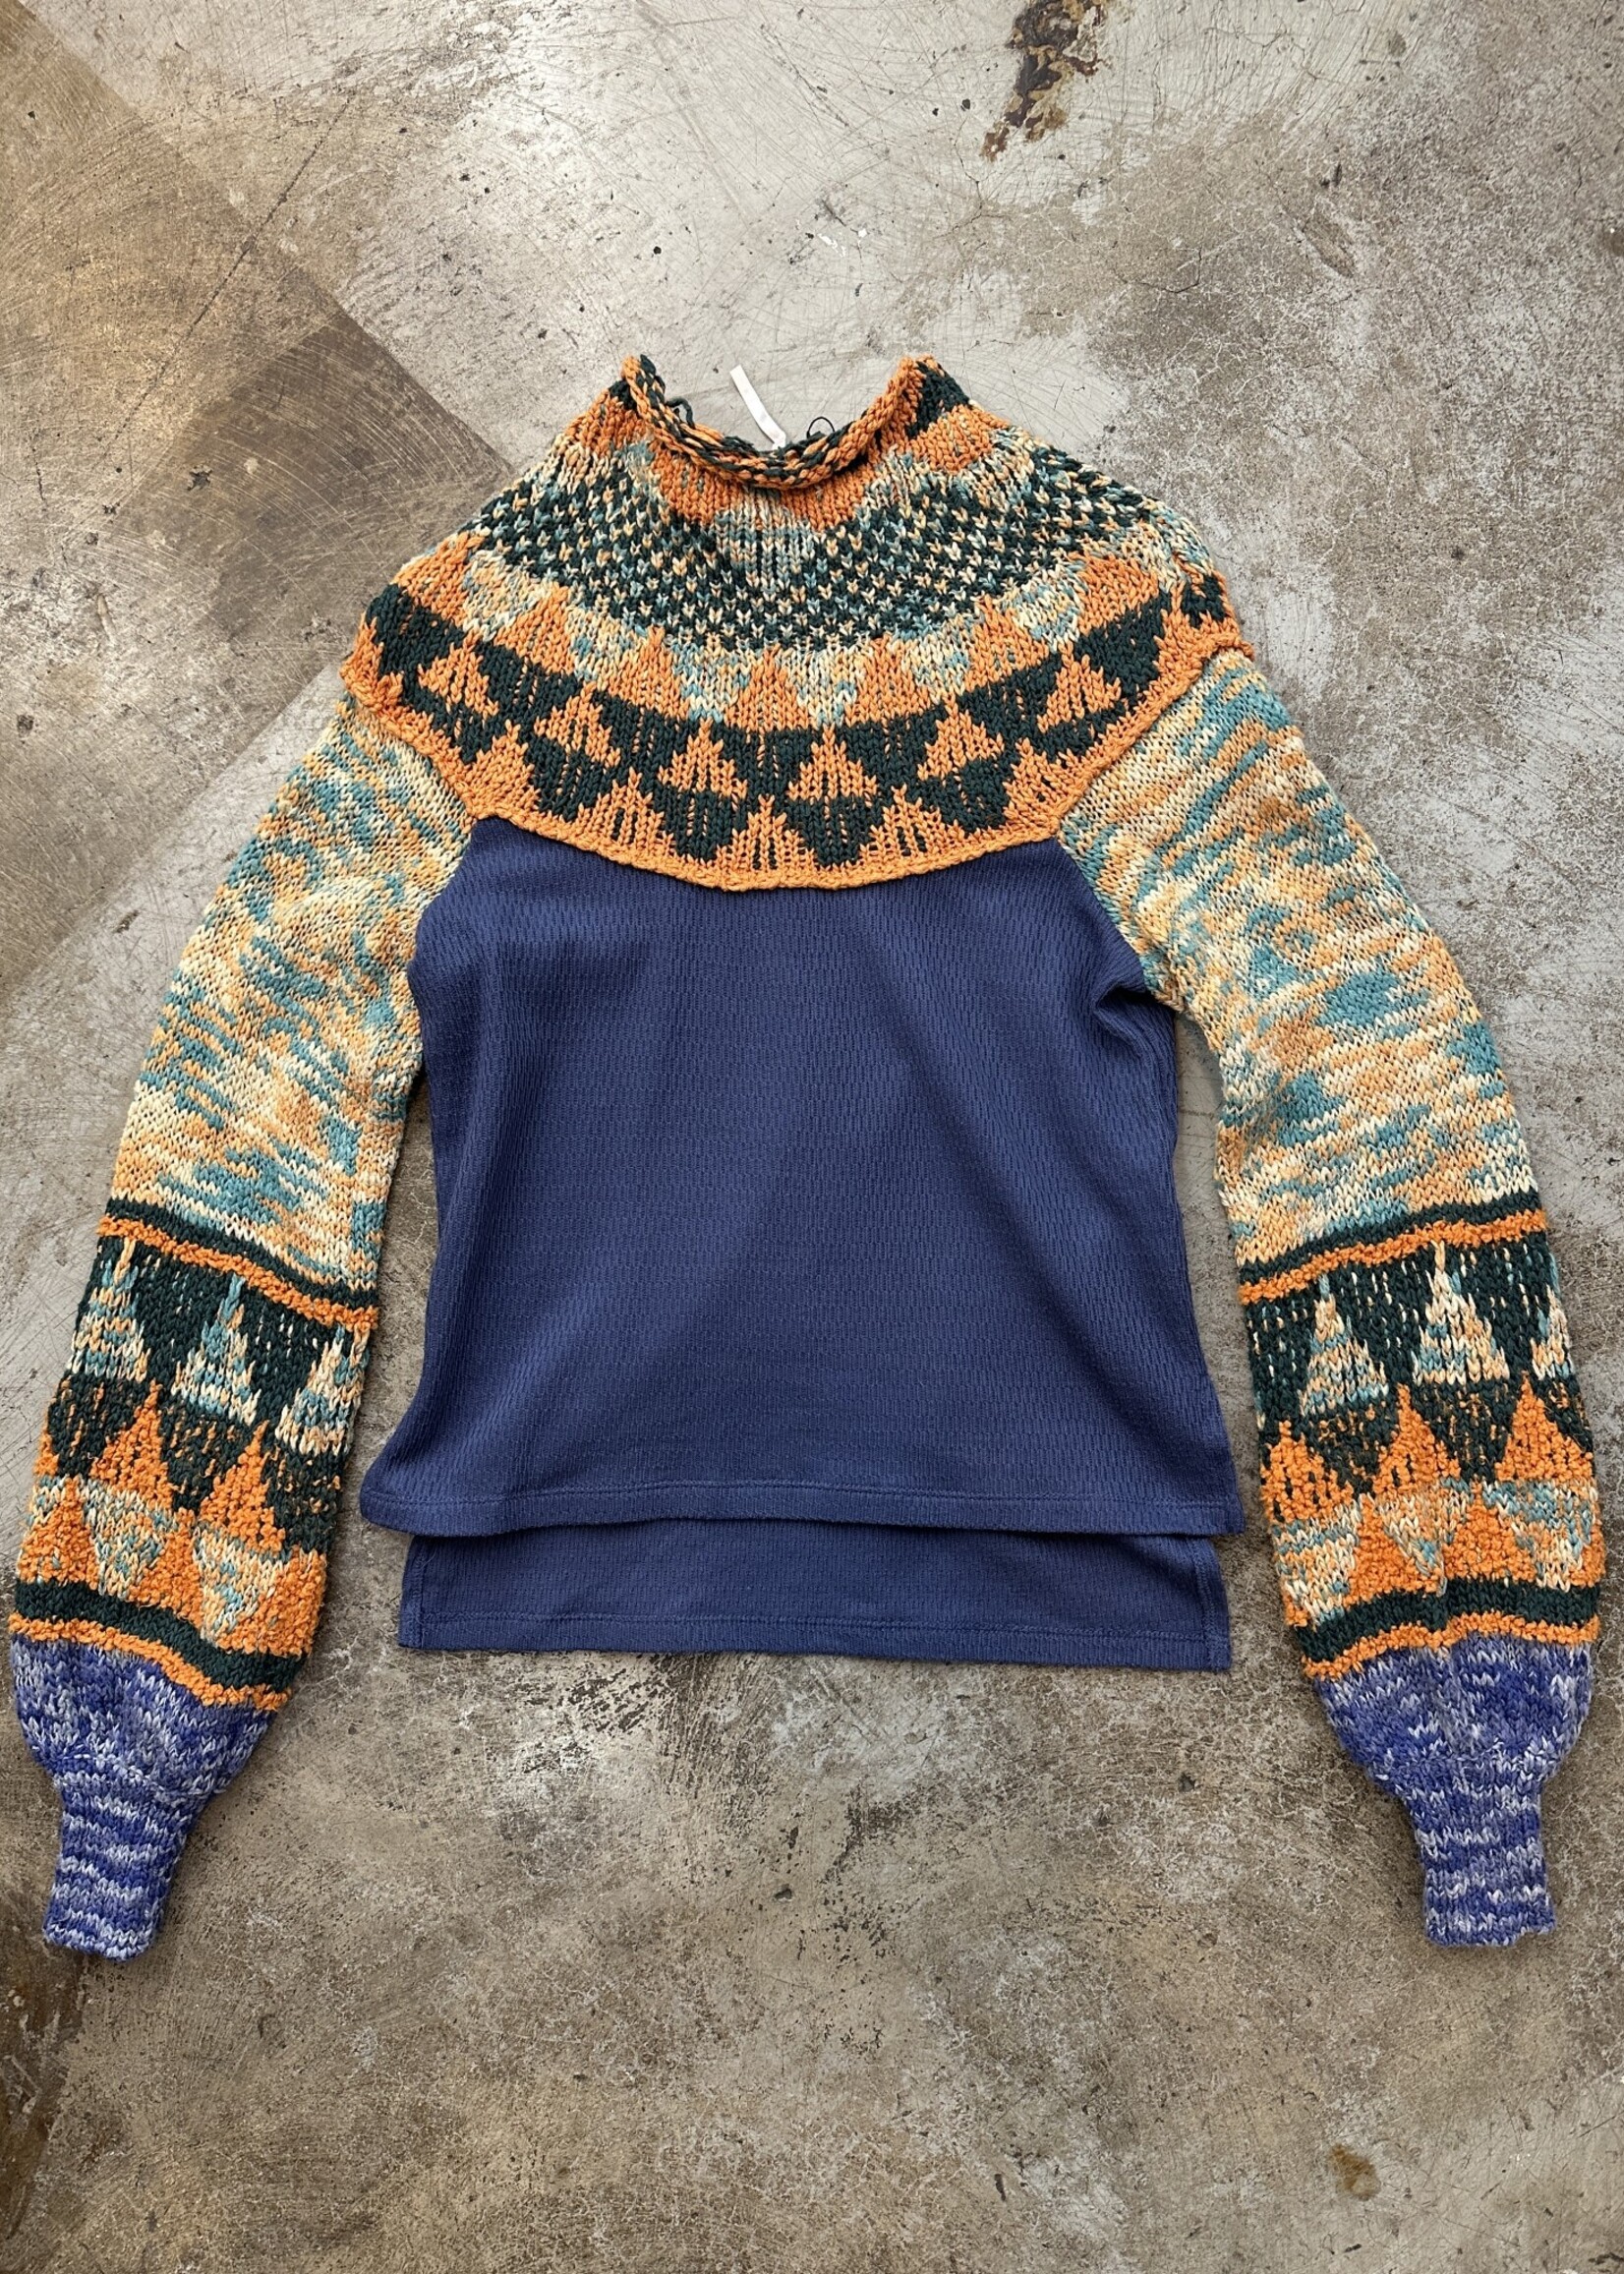 Free People Blue Orange Knit Mock Neck Sweater XS